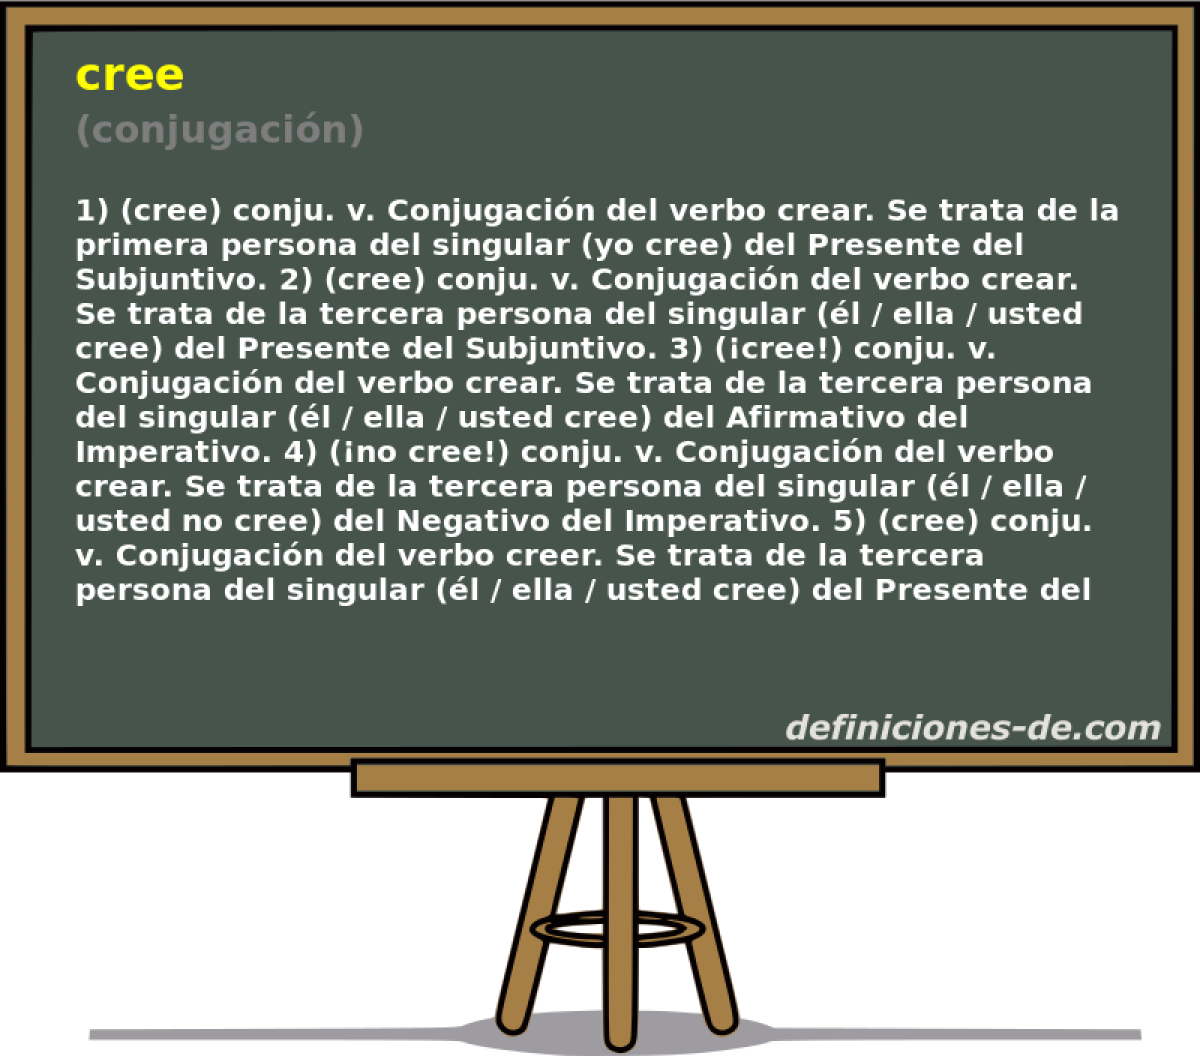 cree (conjugacin)